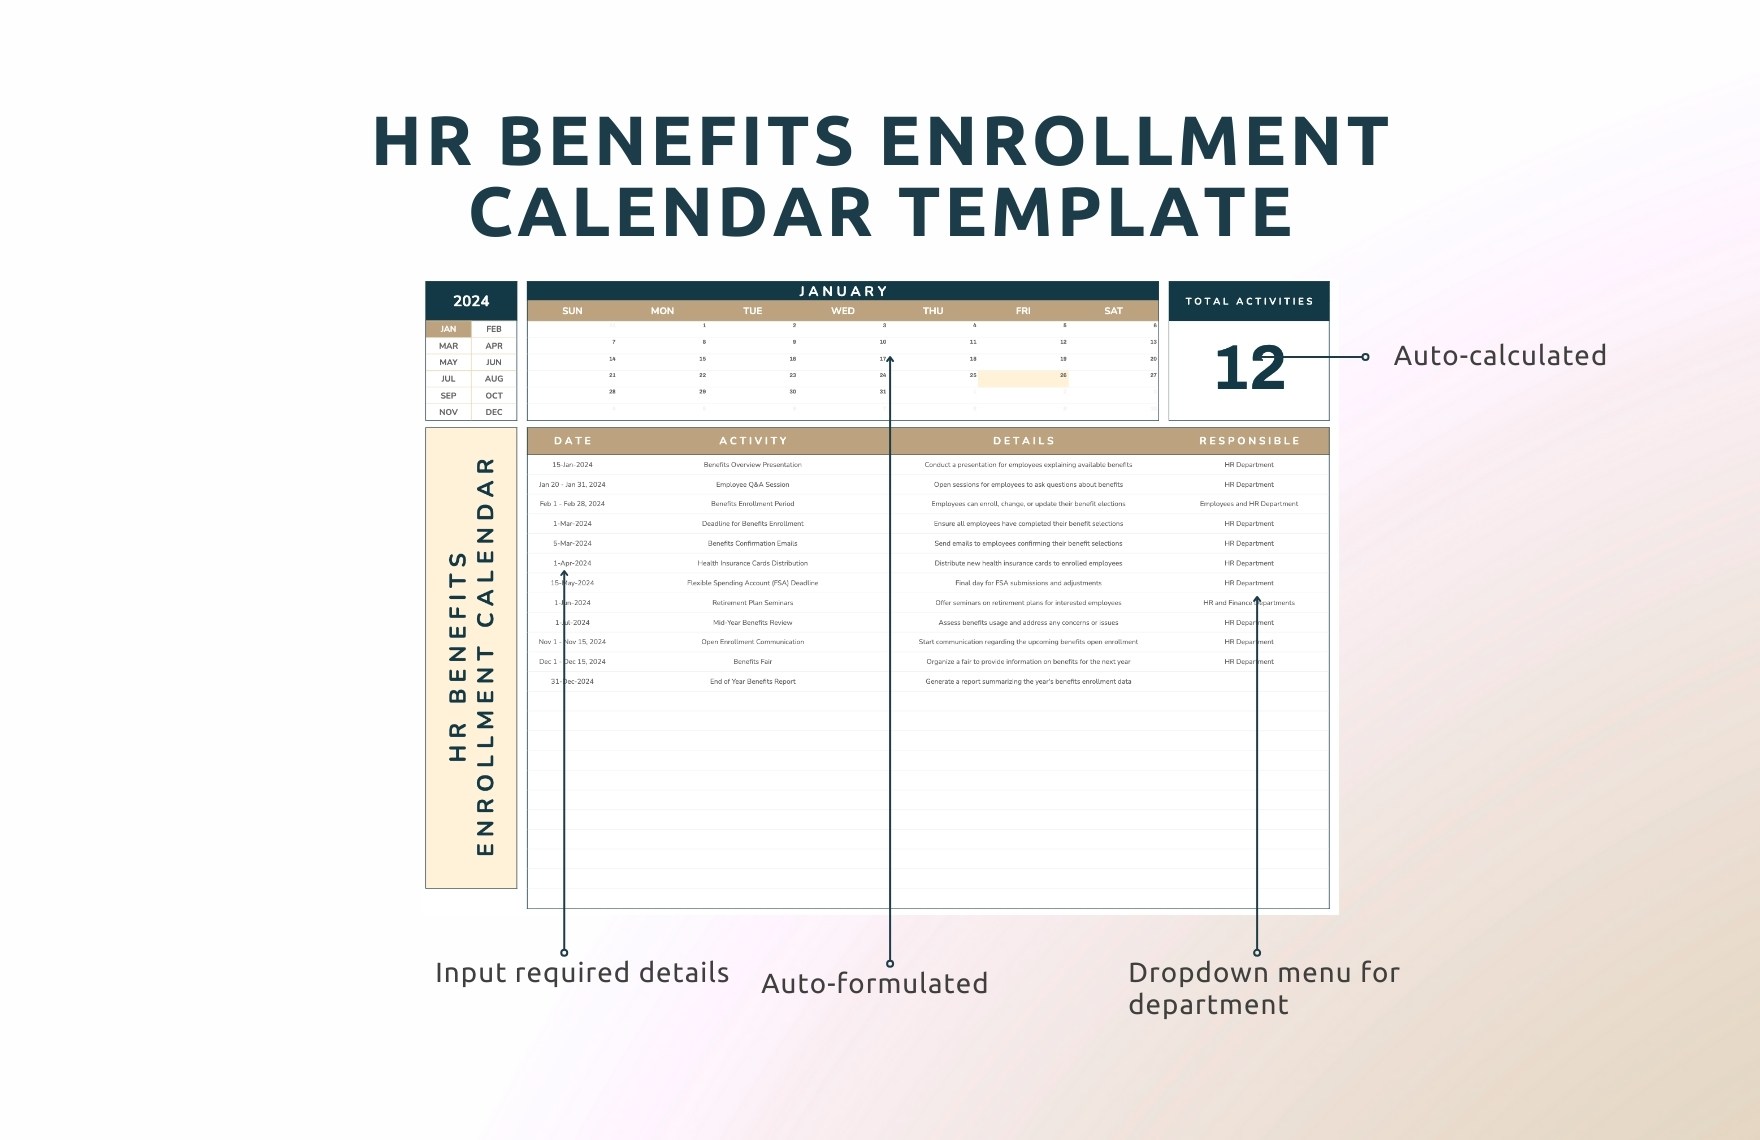 HR Benefits Enrollment Calendar Template